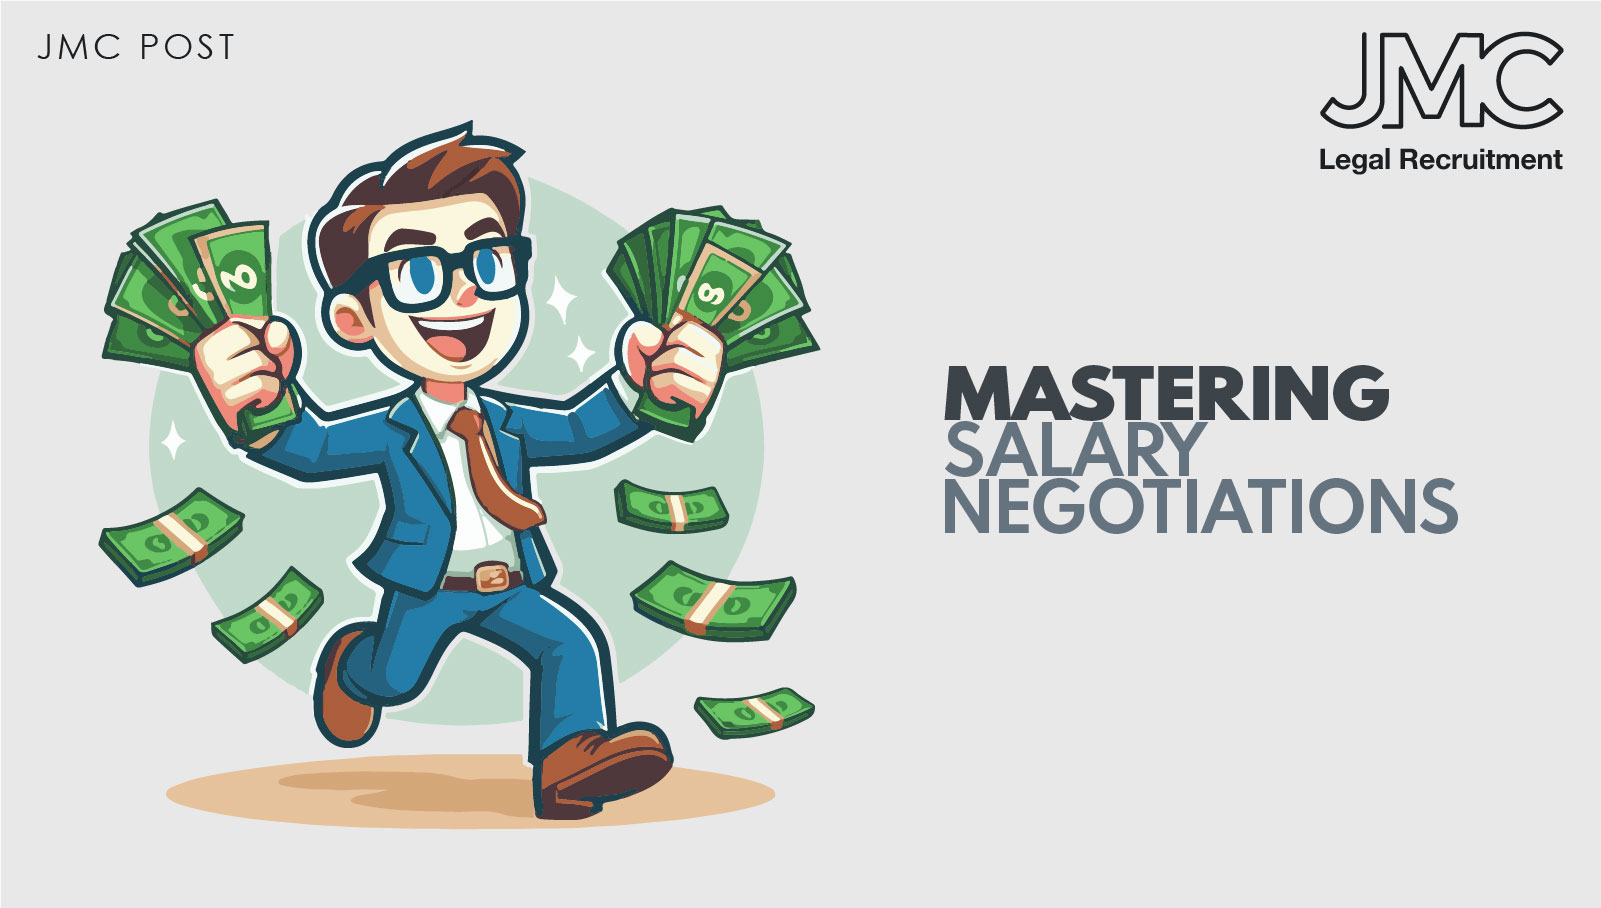 Mastering Salary Negotiations